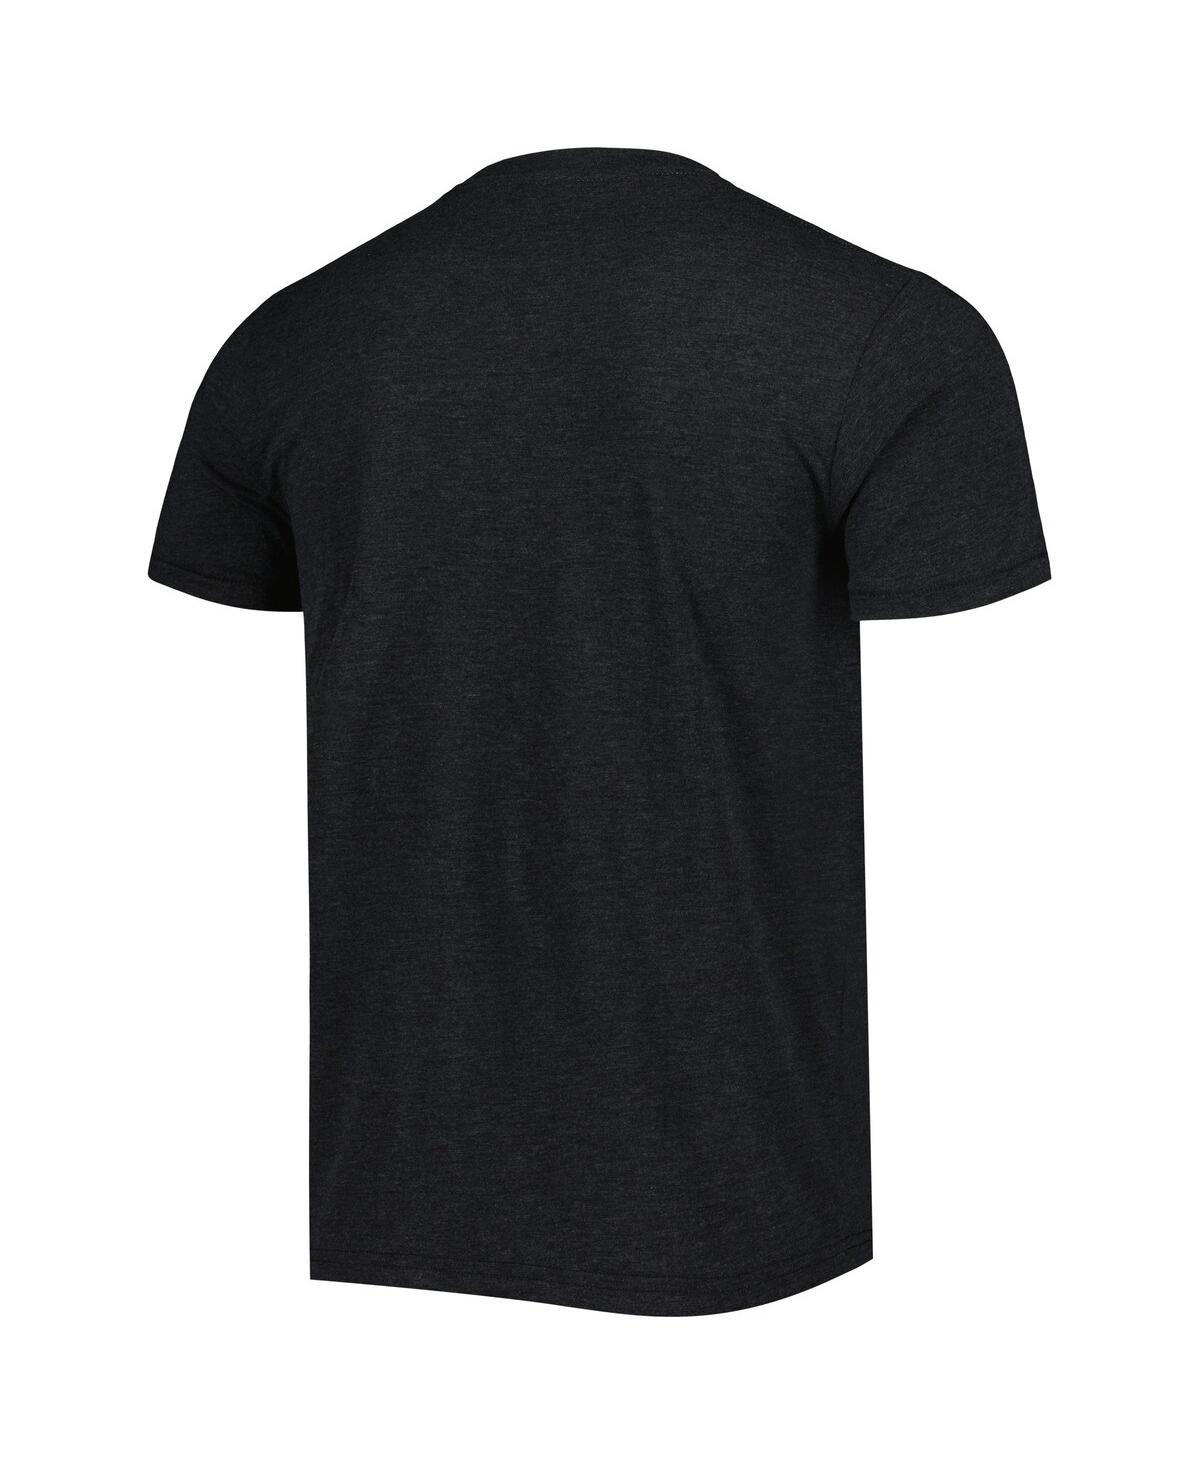 Shop Homage Men's  Black New Orleans Saints Superdome Hyper Local Tri-blend T-shirt